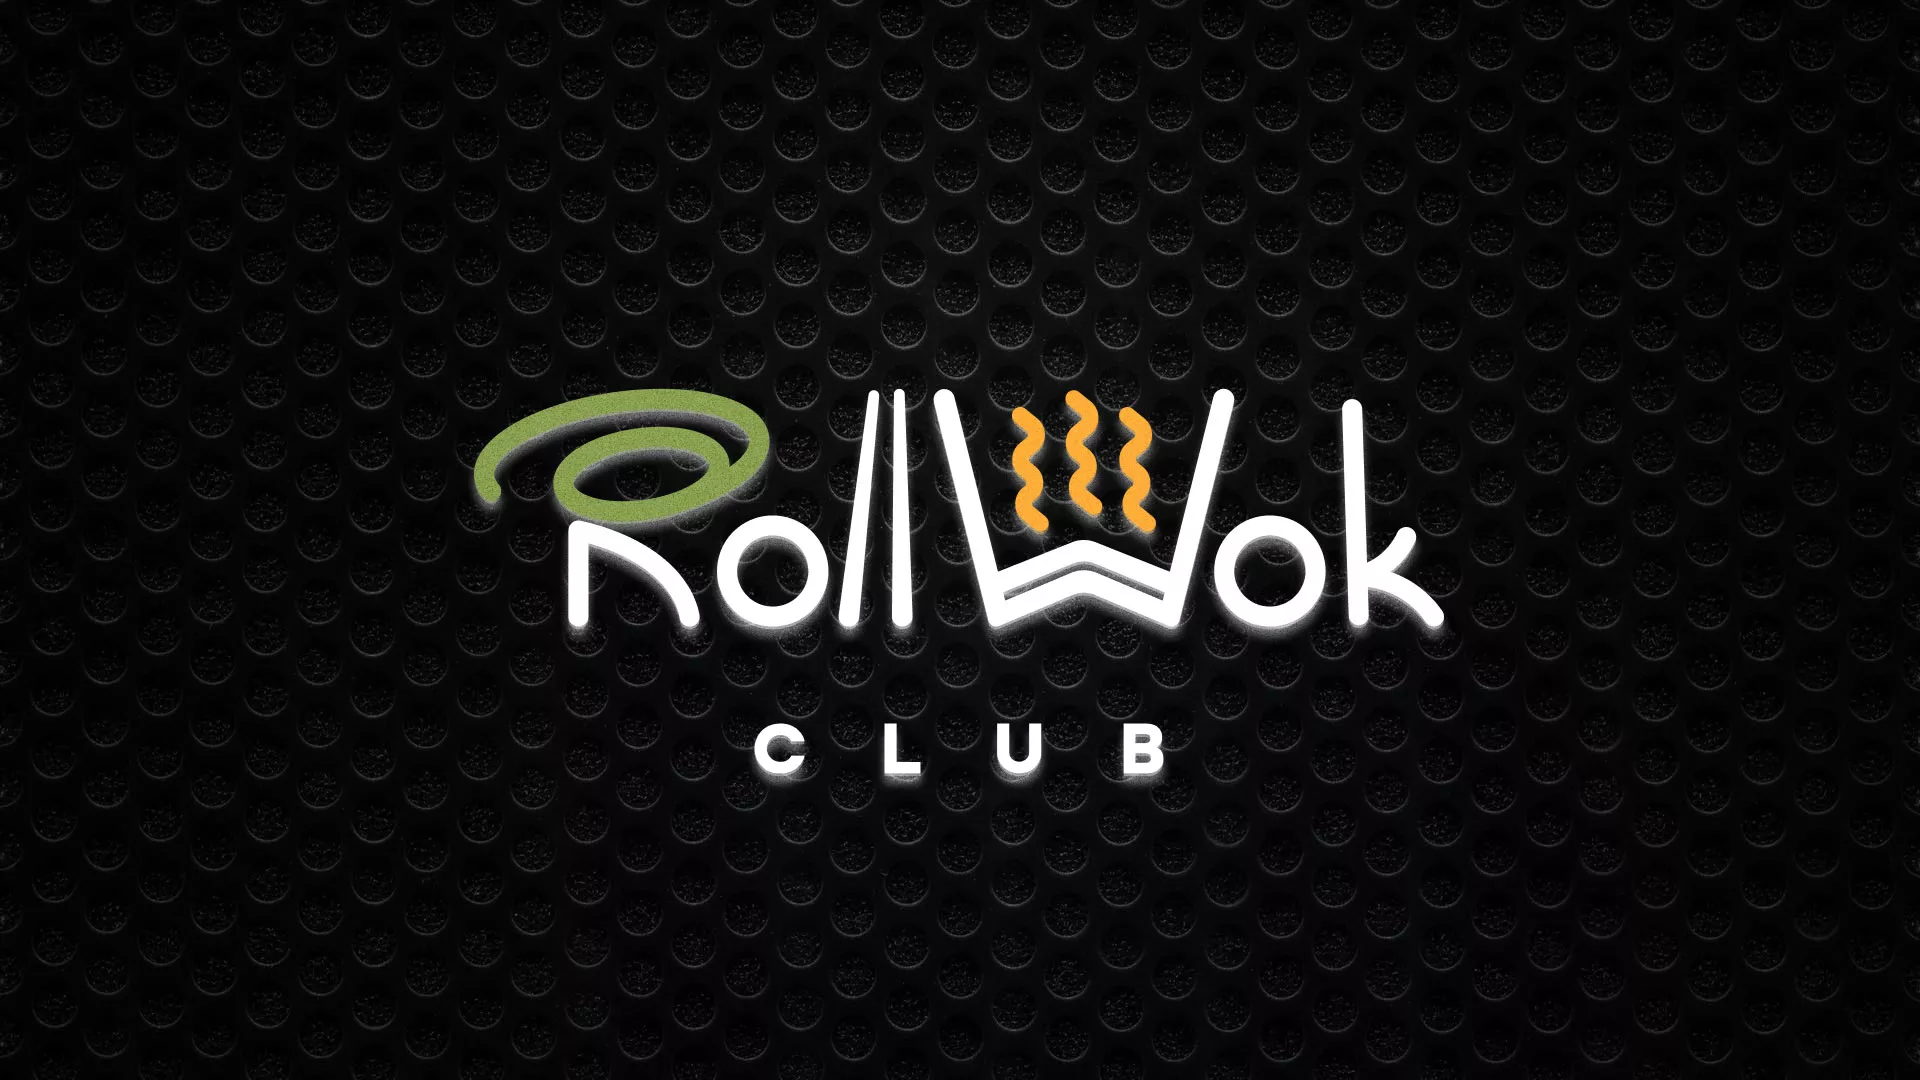 Брендирование торговых точек суши-бара «Roll Wok Club» в Грязовце